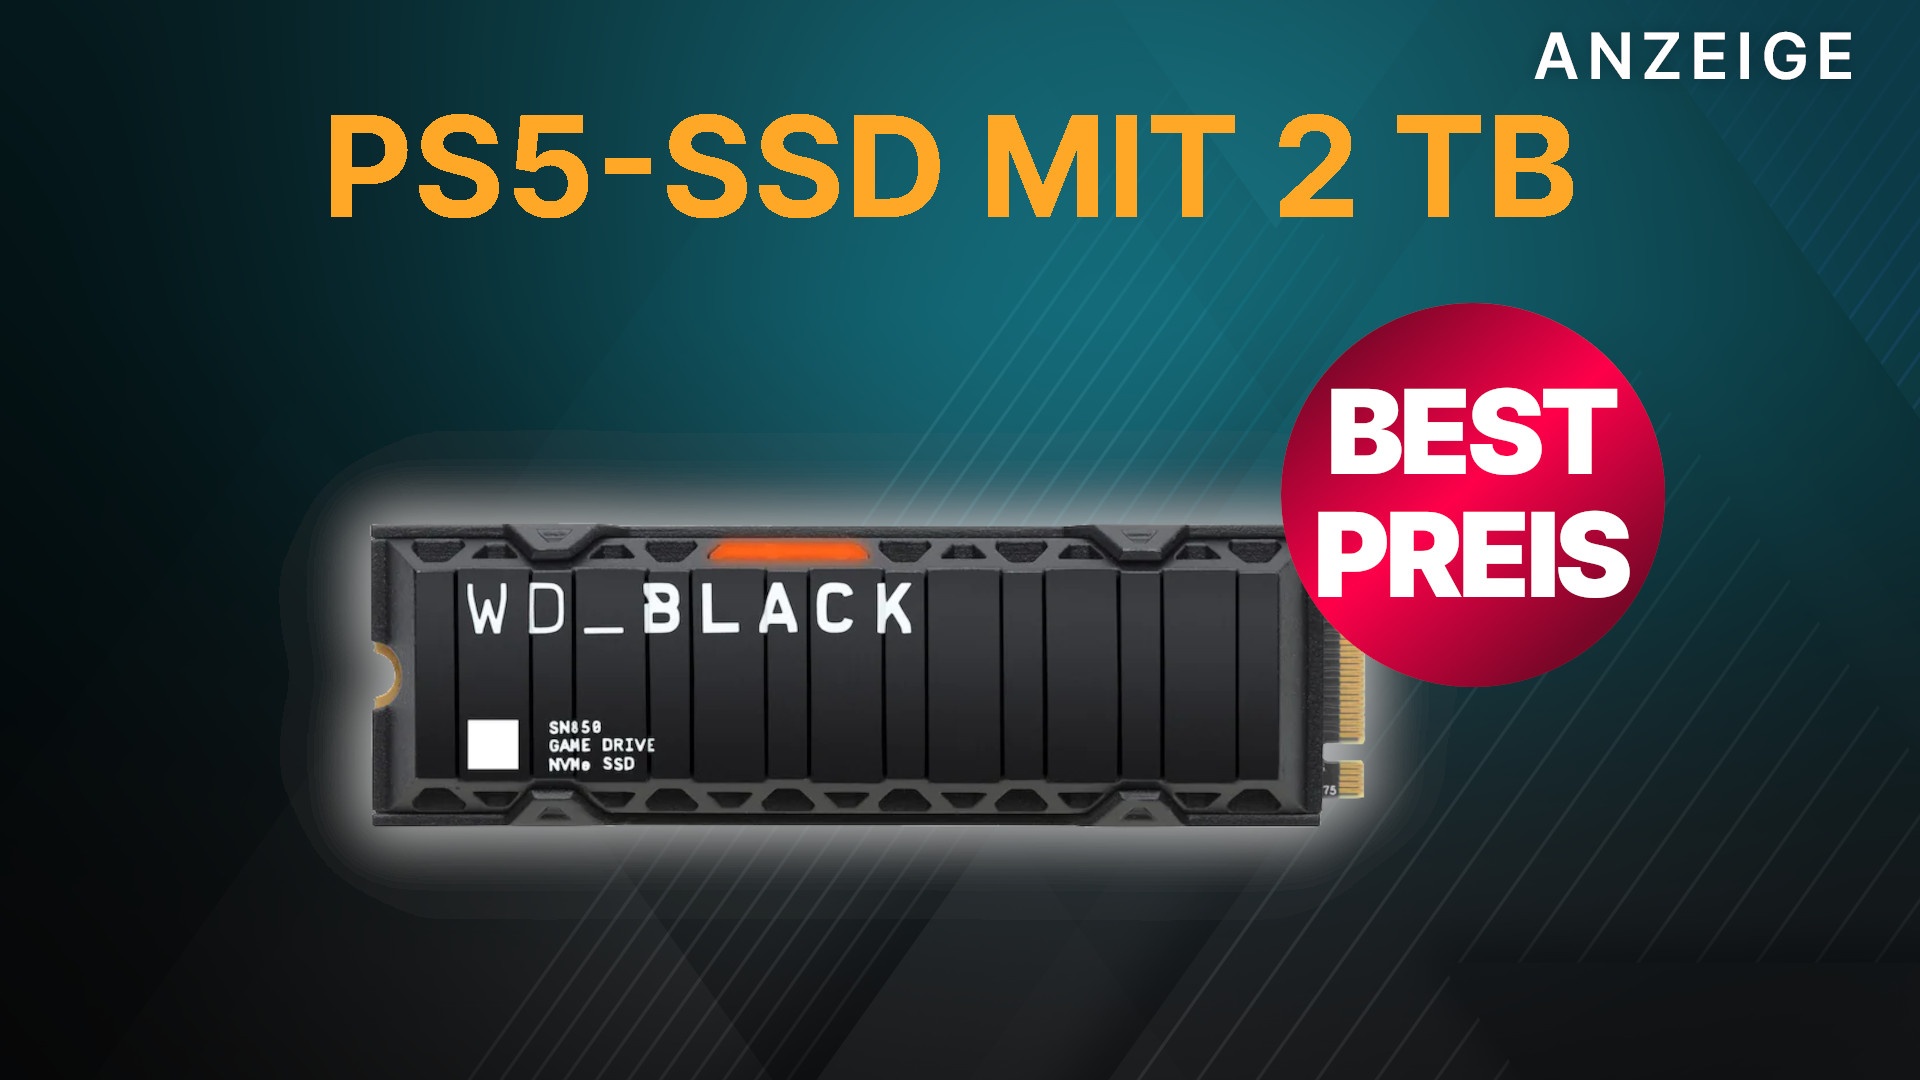 Preisfehler? 60% Rabatt für PS5-SSD WD Black SN850, aber der schnellere  Nachfolger SN850X kostet noch weniger